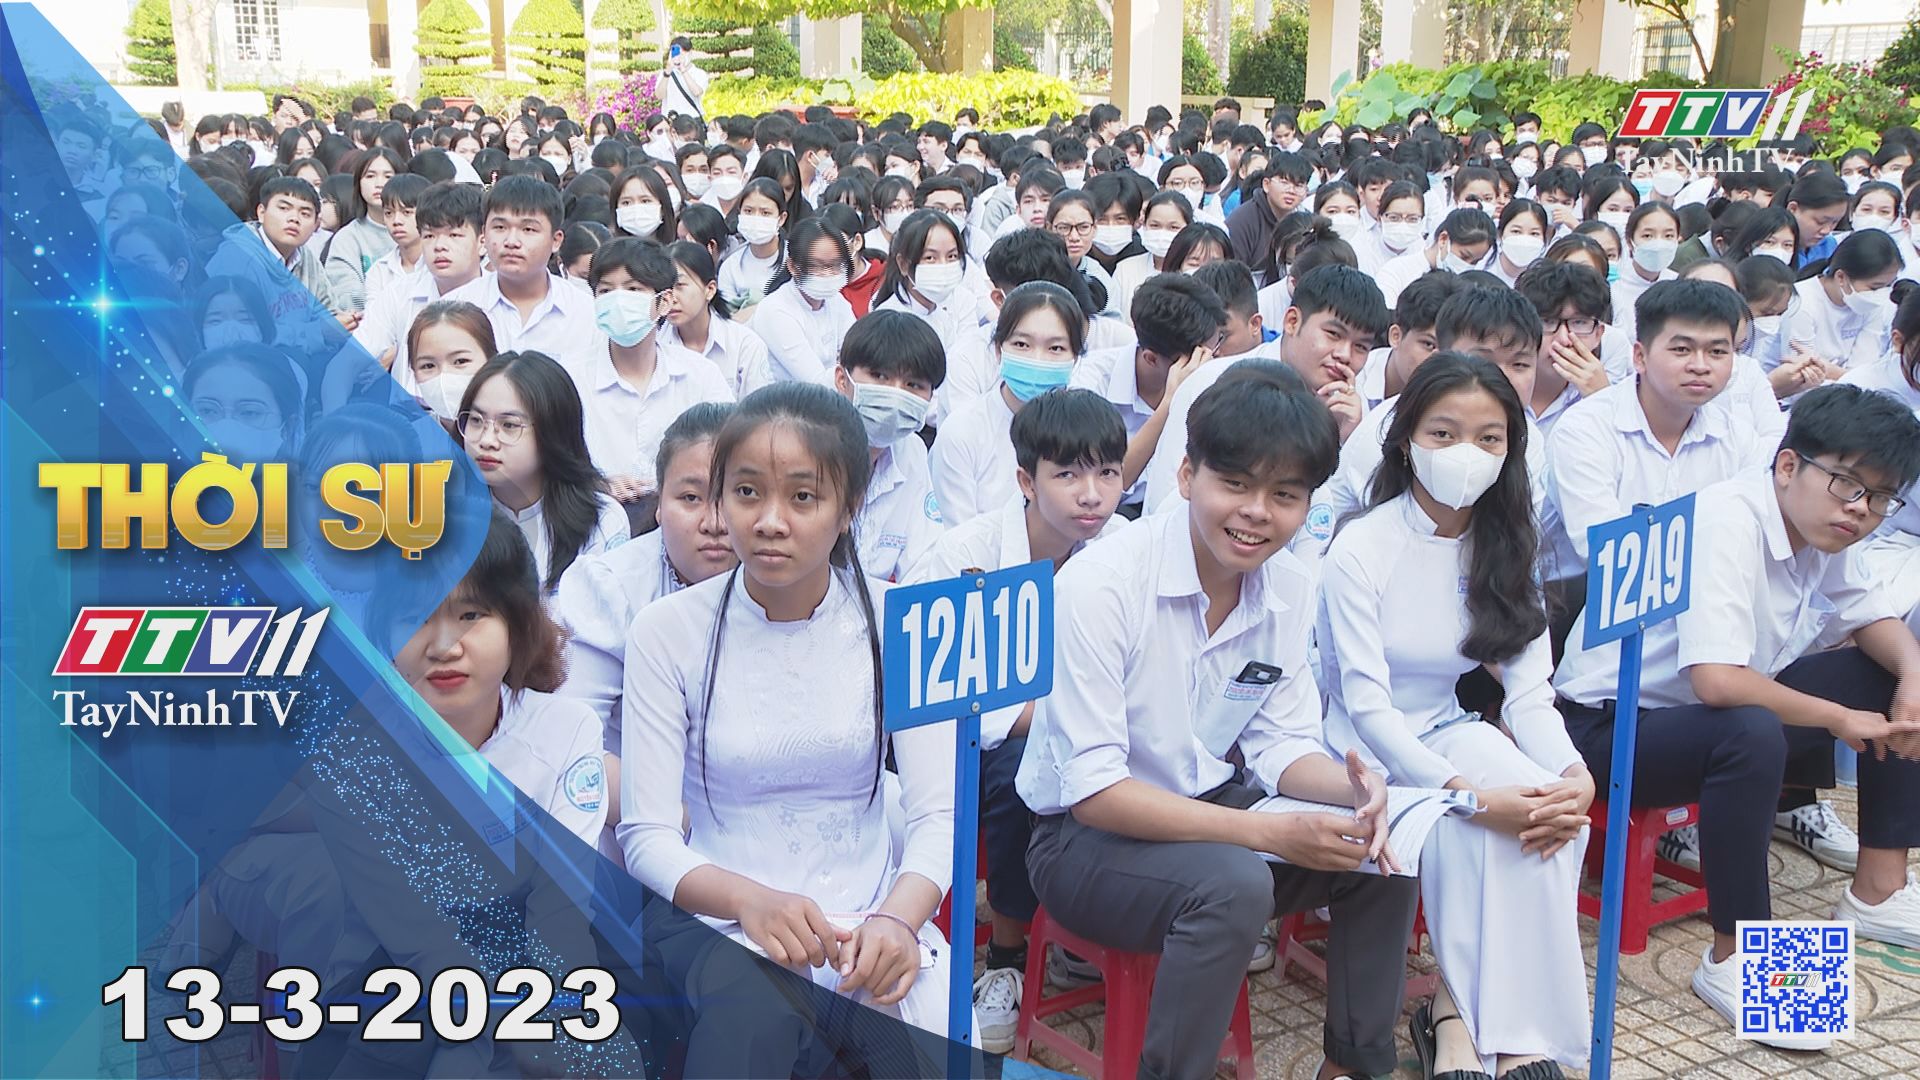 Thời sự Tây Ninh 13-3-2023 | Tin tức hôm nay | TayNinhTV